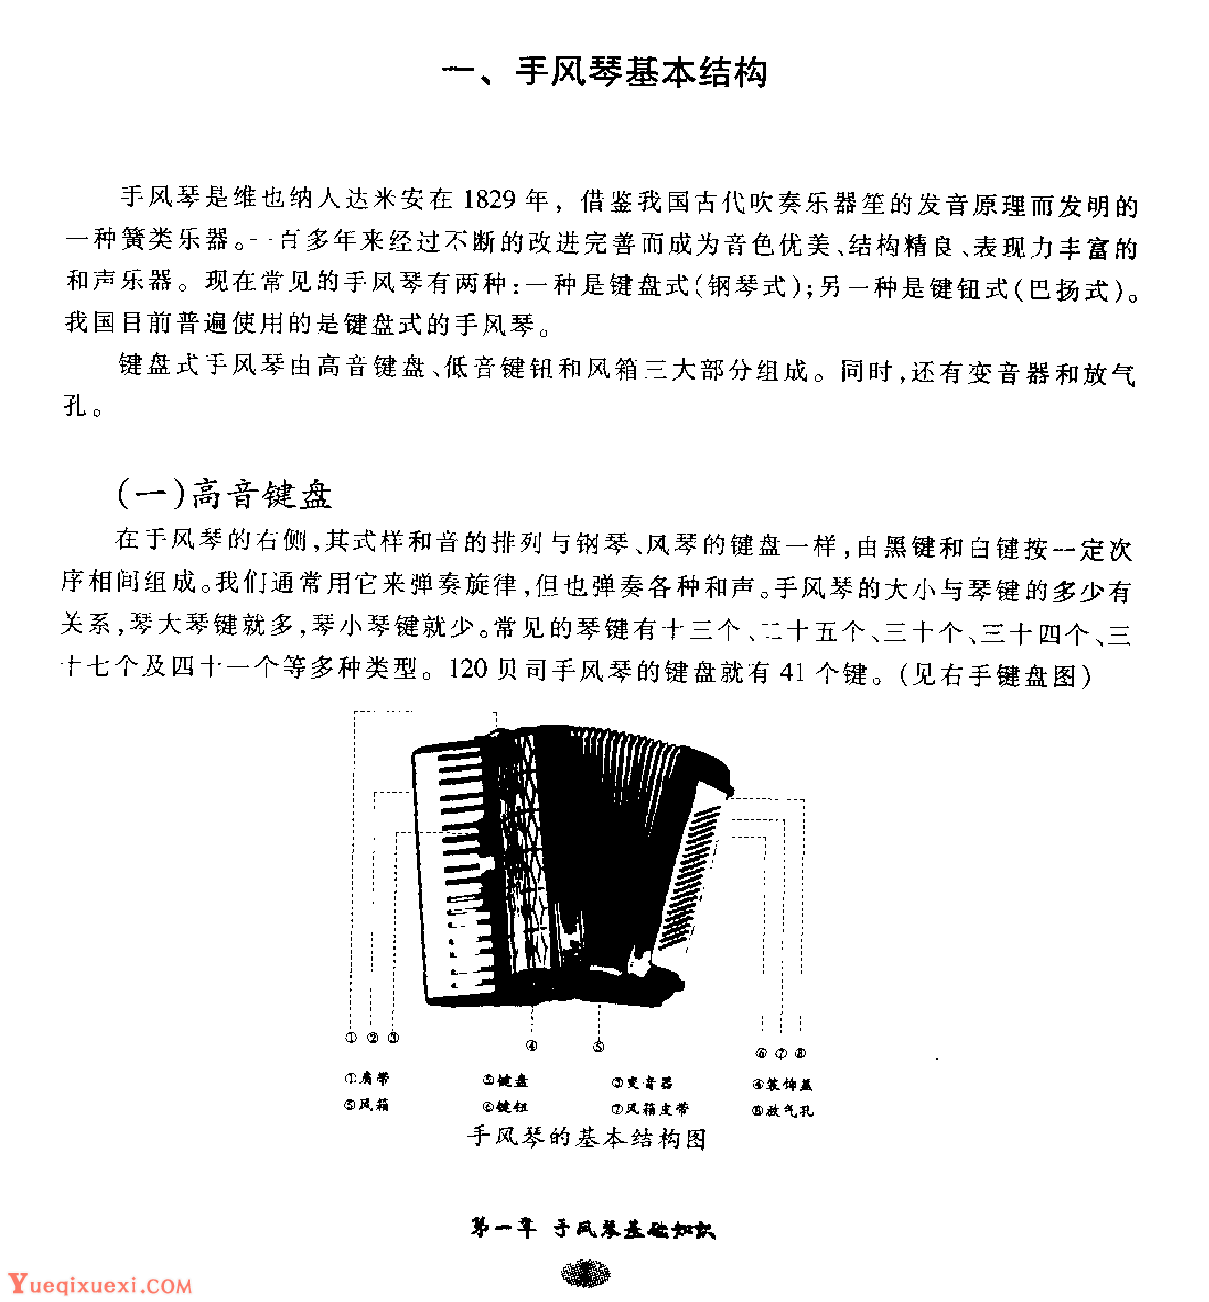 手风琴基本结构1